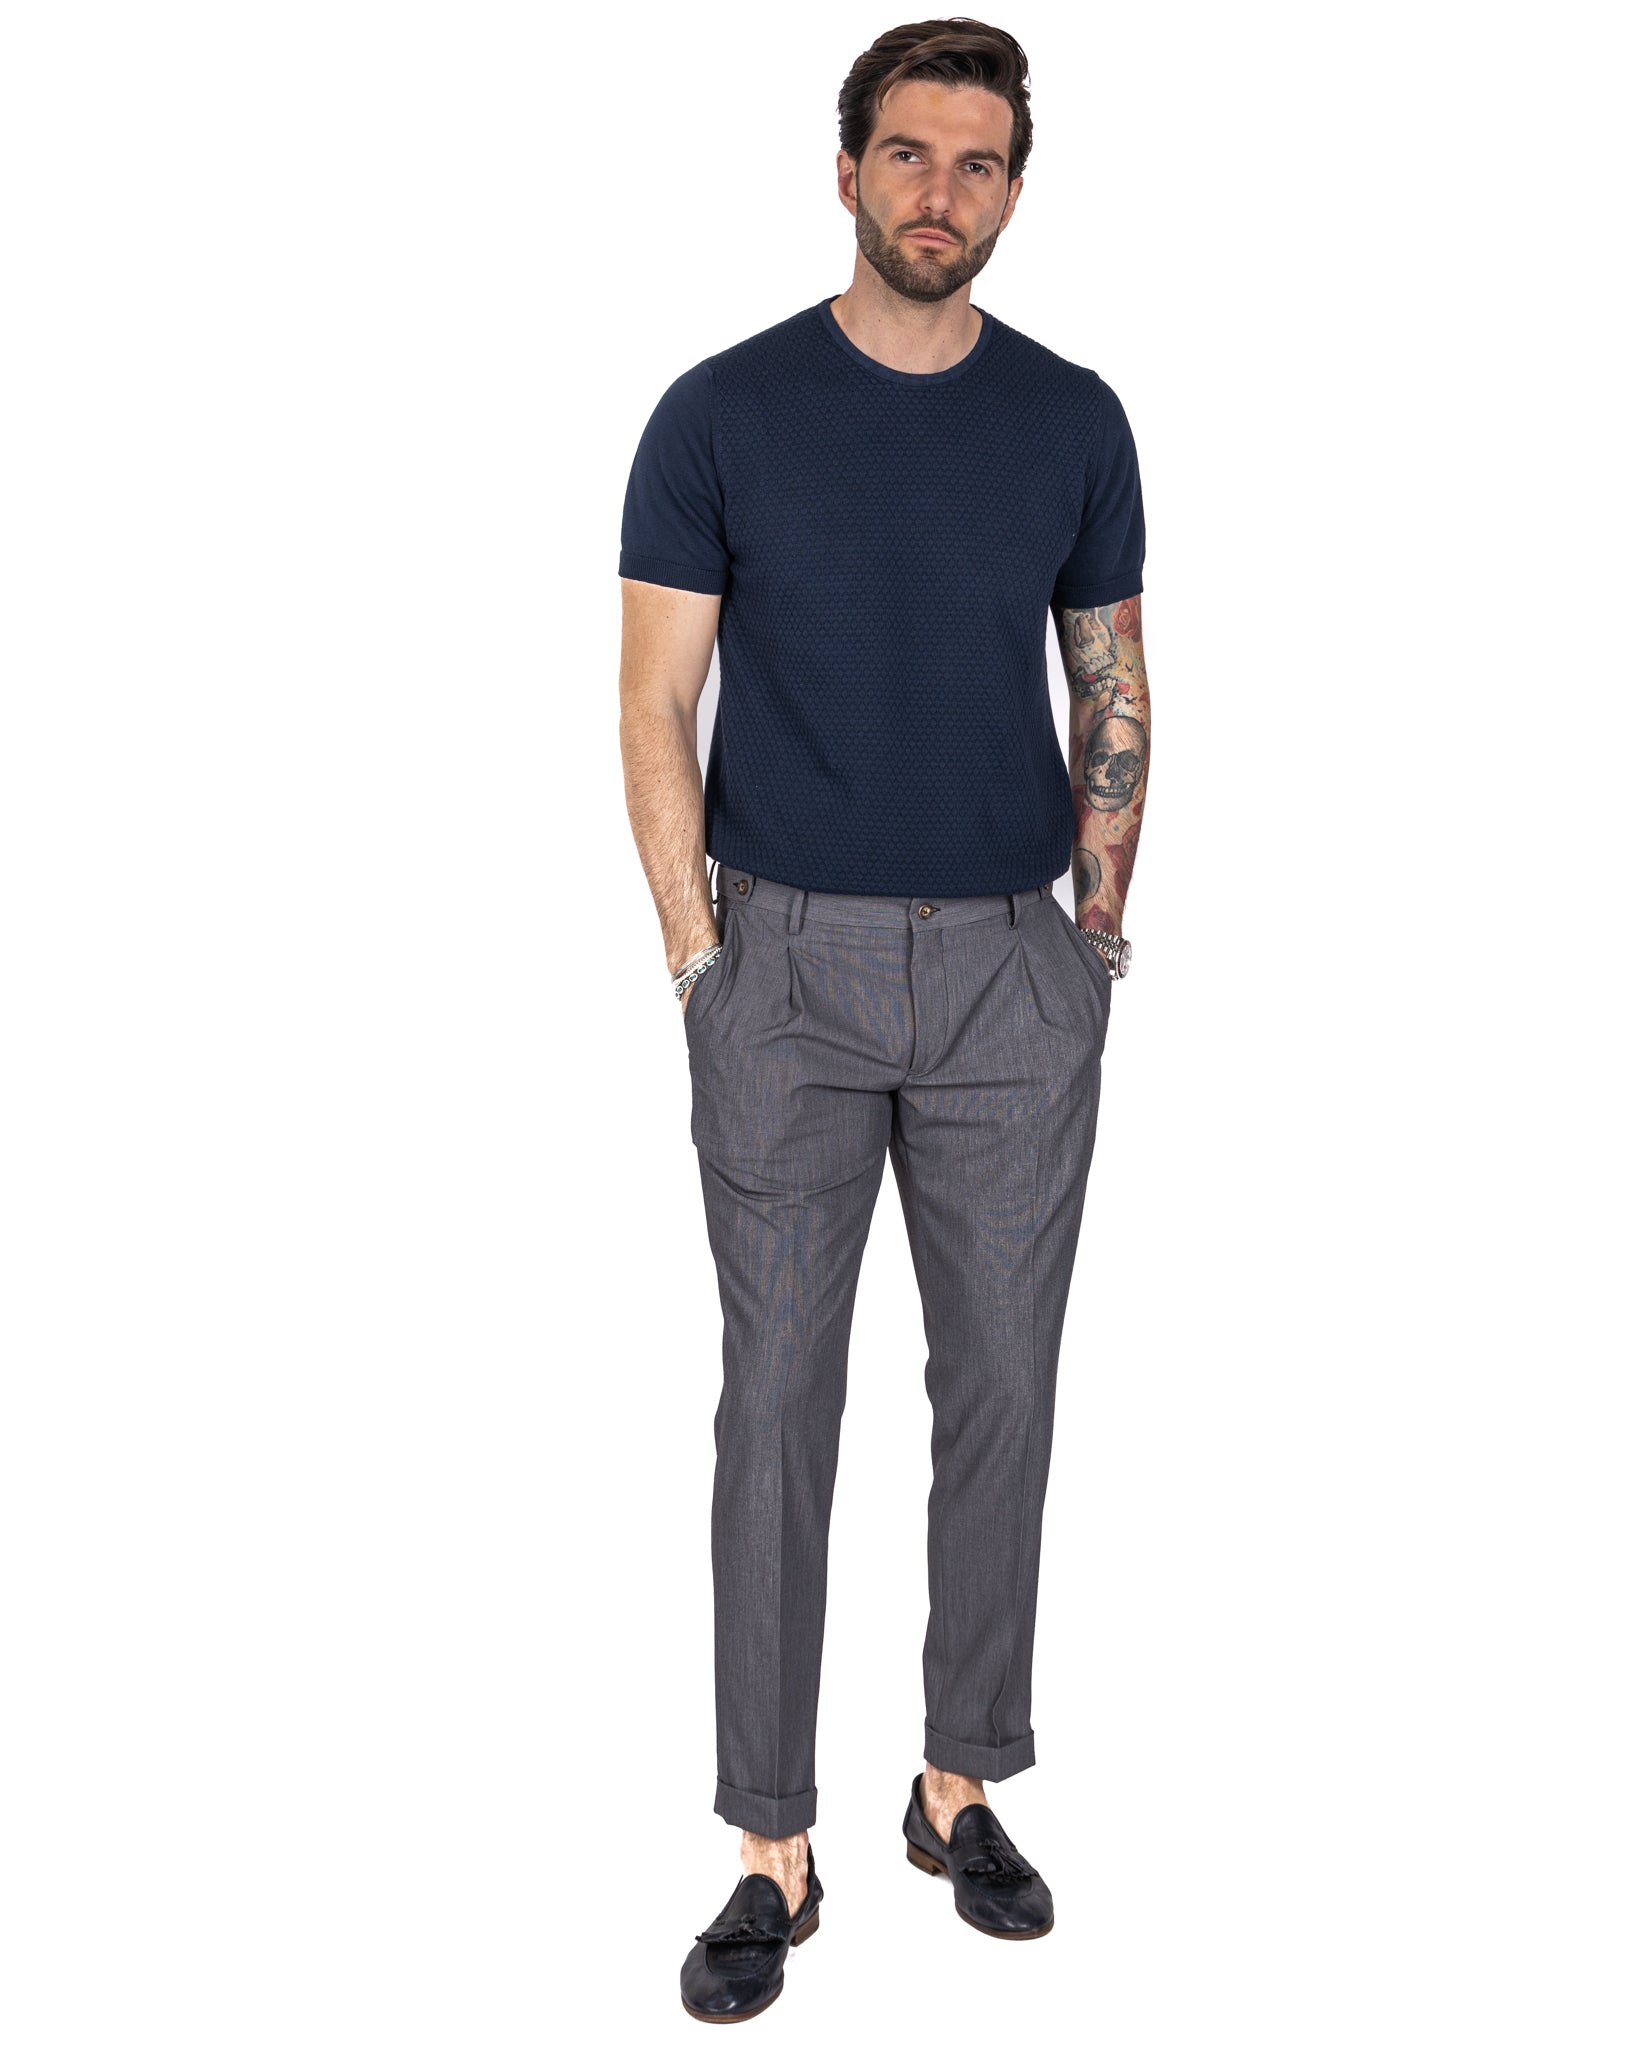 Milan - gray basic trousers